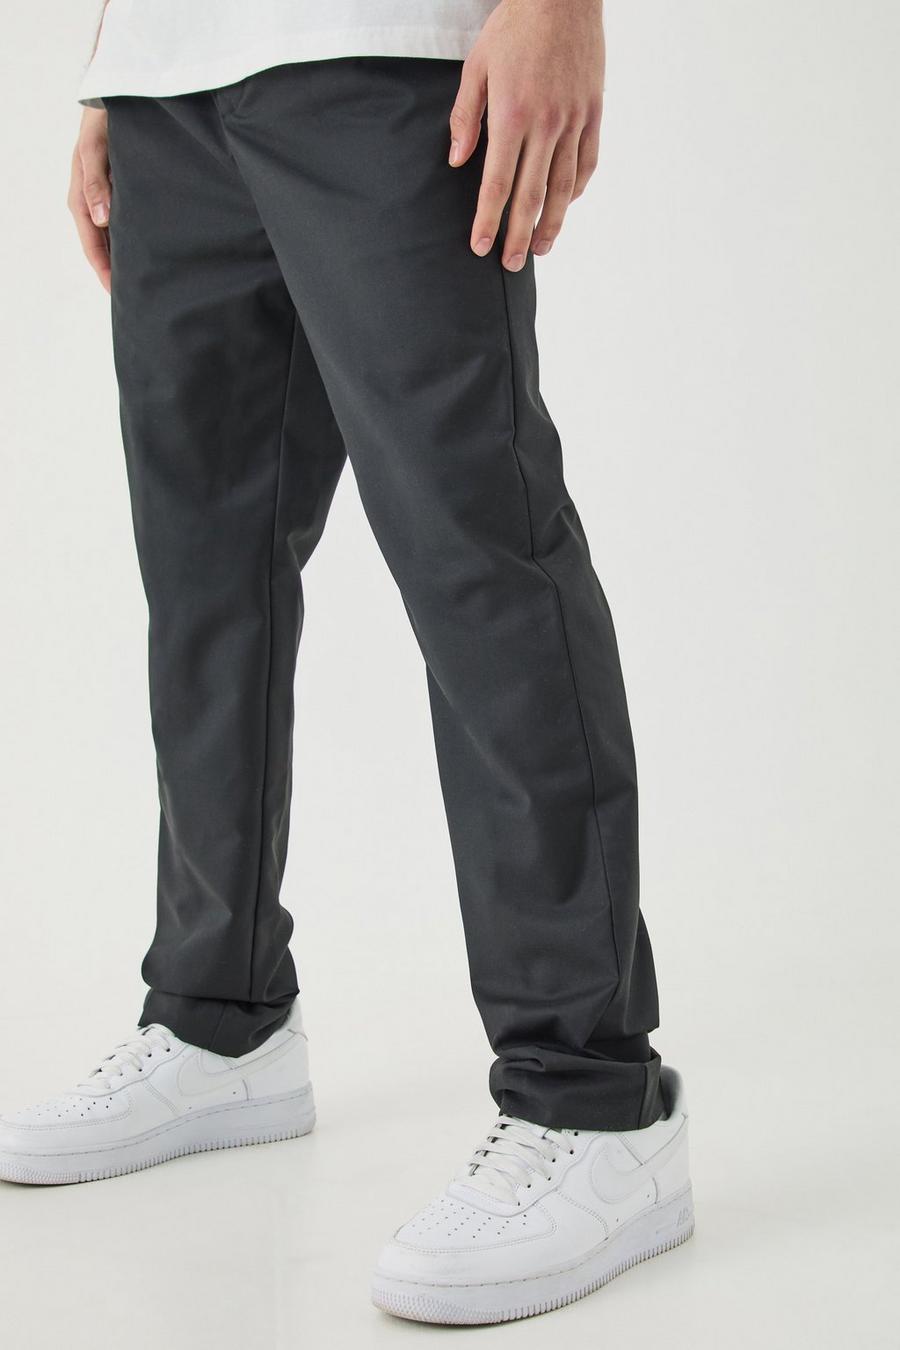 Pantalon droit plissé confort, Black